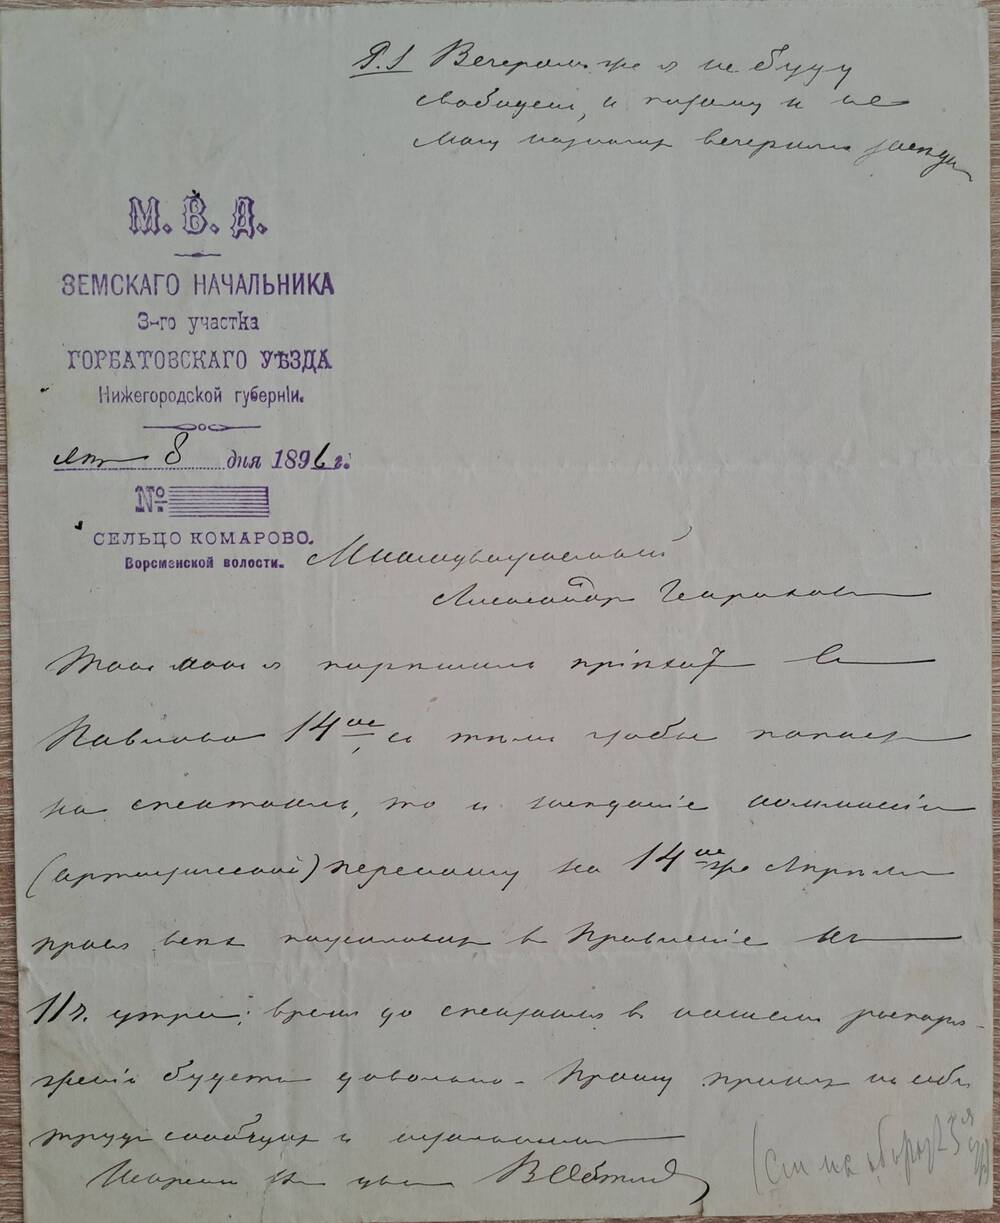 Письмо А.Г. Штанге от В.Д. Обтяжнова с приглашением 14 апреля в правление на спектакль.